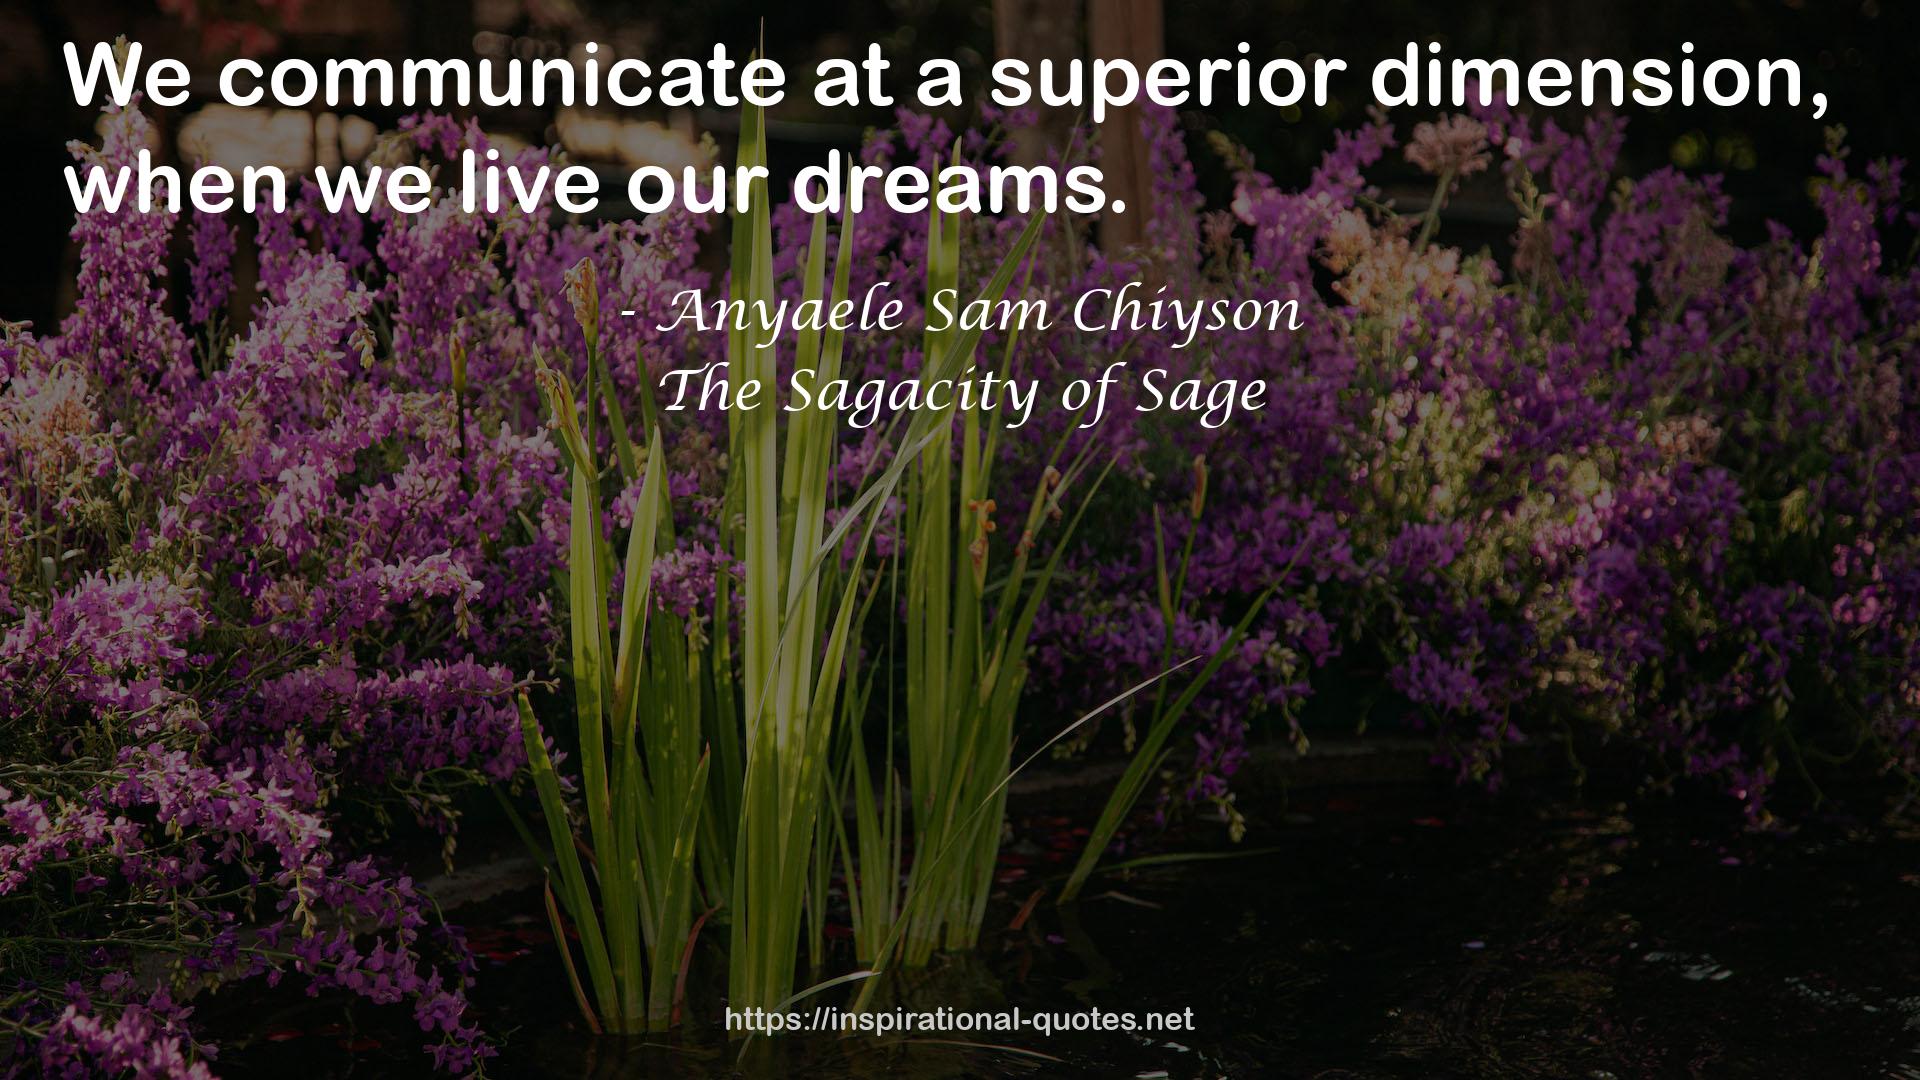 The Sagacity of Sage QUOTES